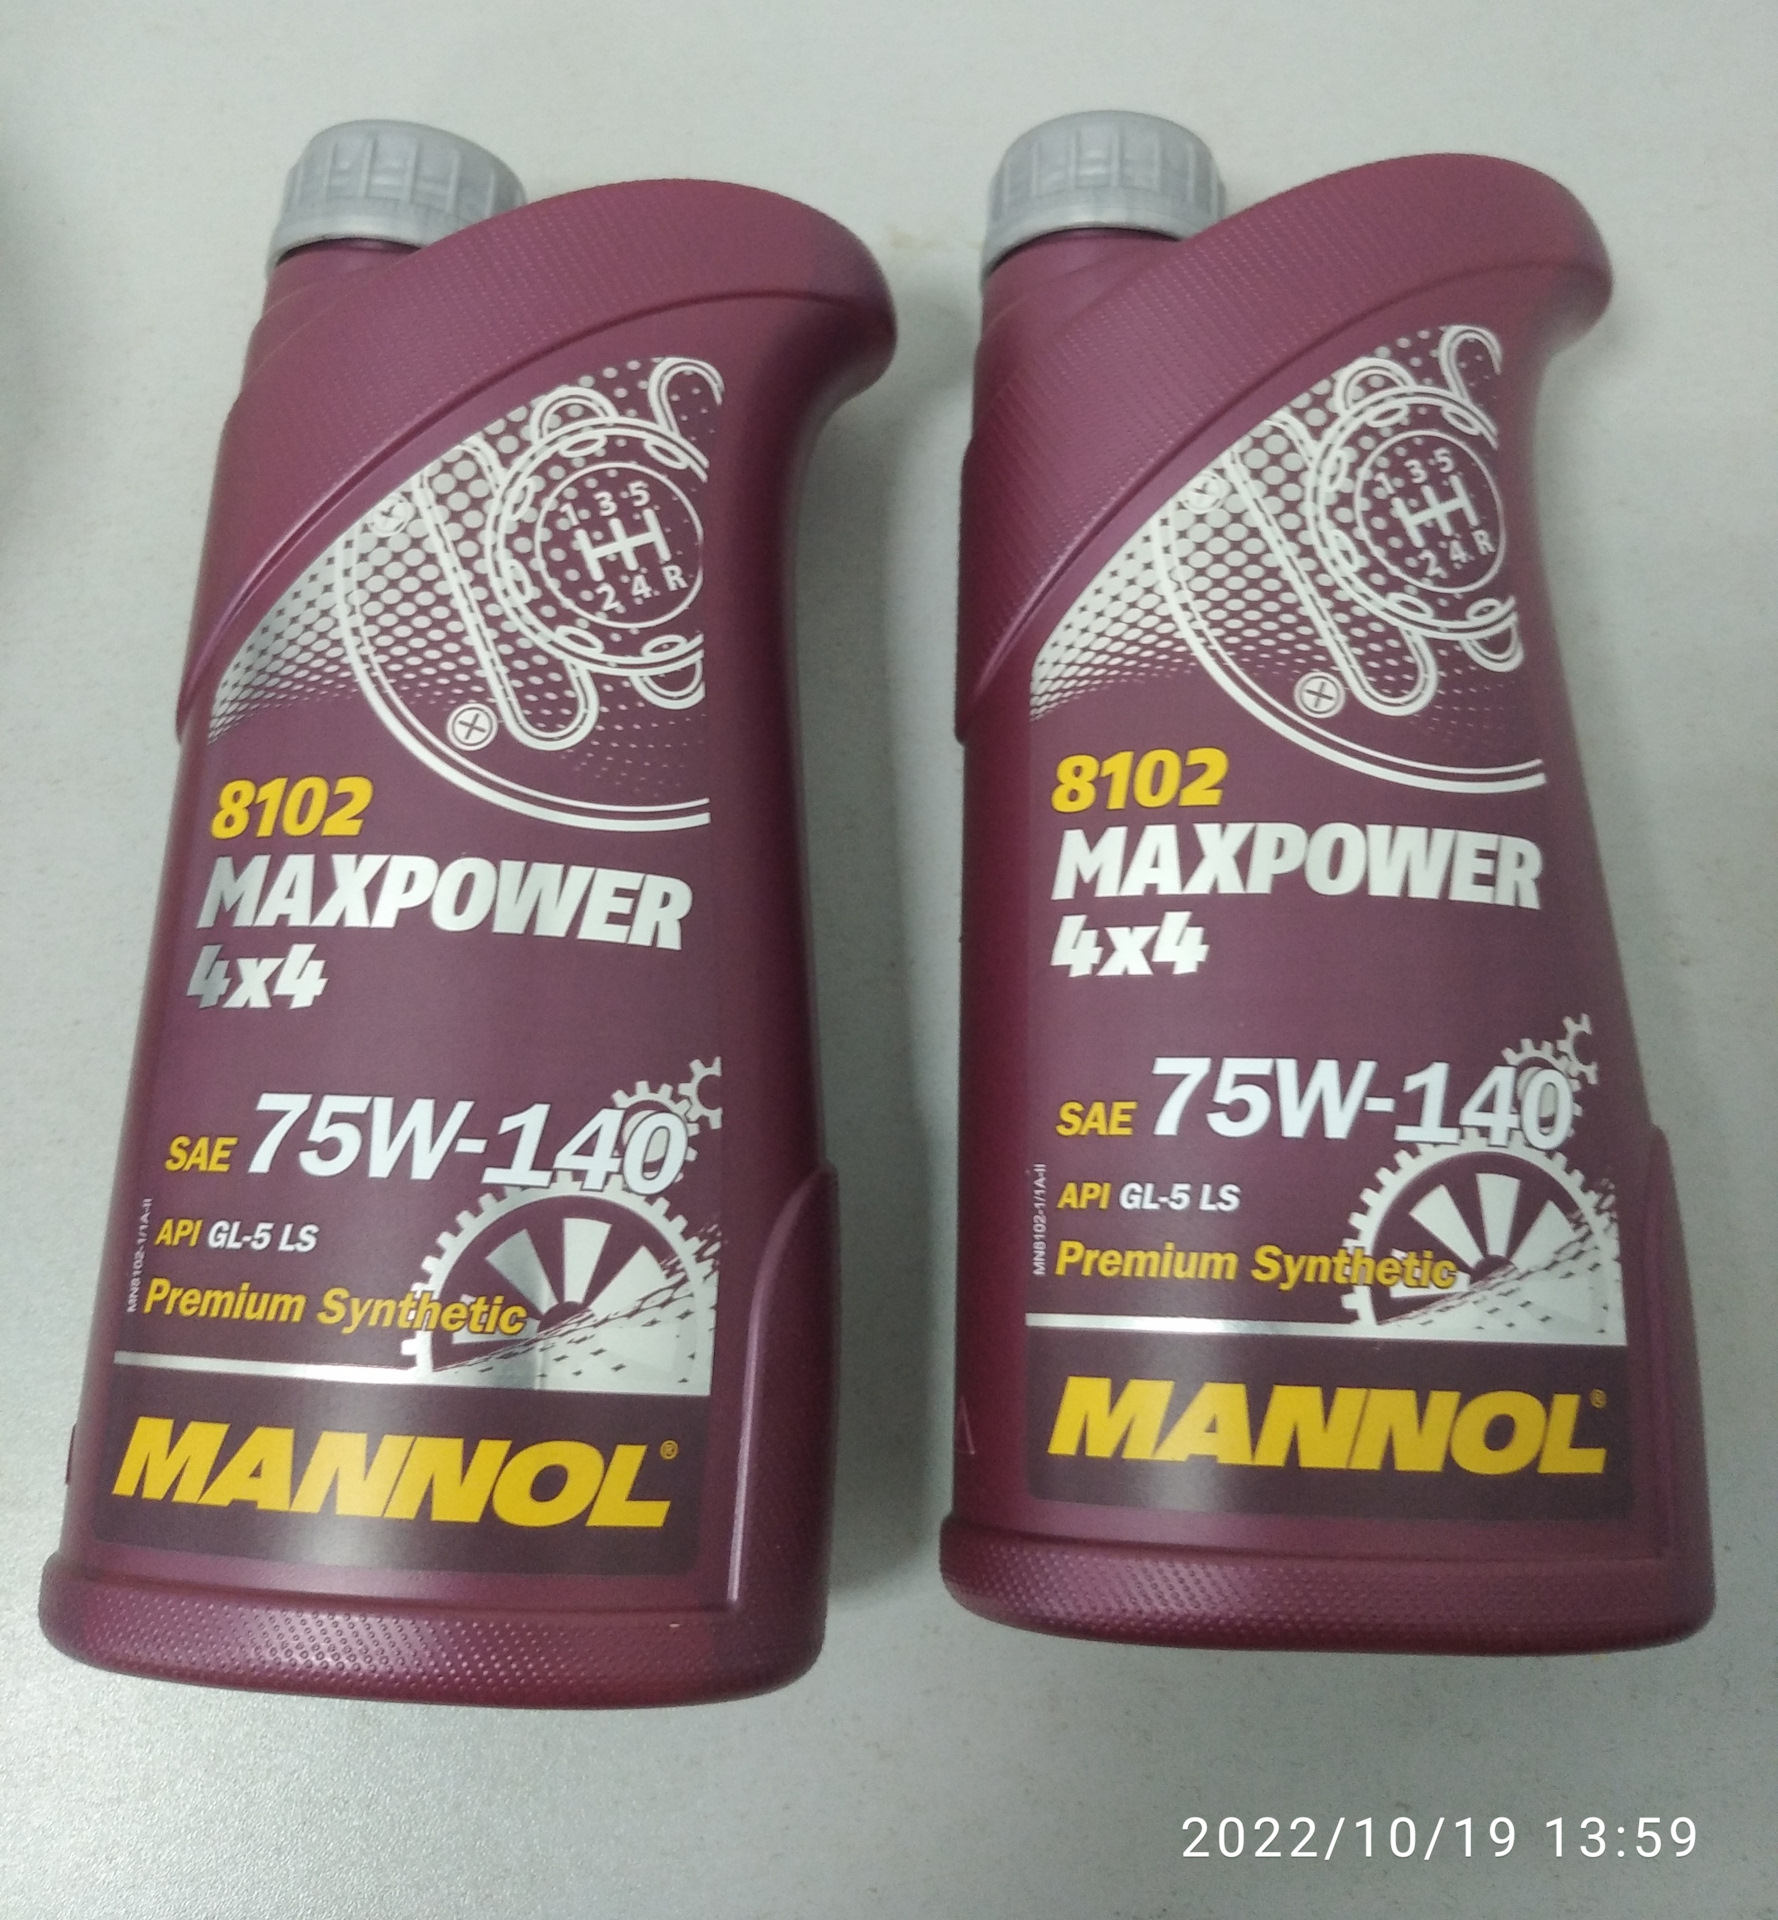 Mannol 9932 rust dissolver преобразователь ржавчины фото 110